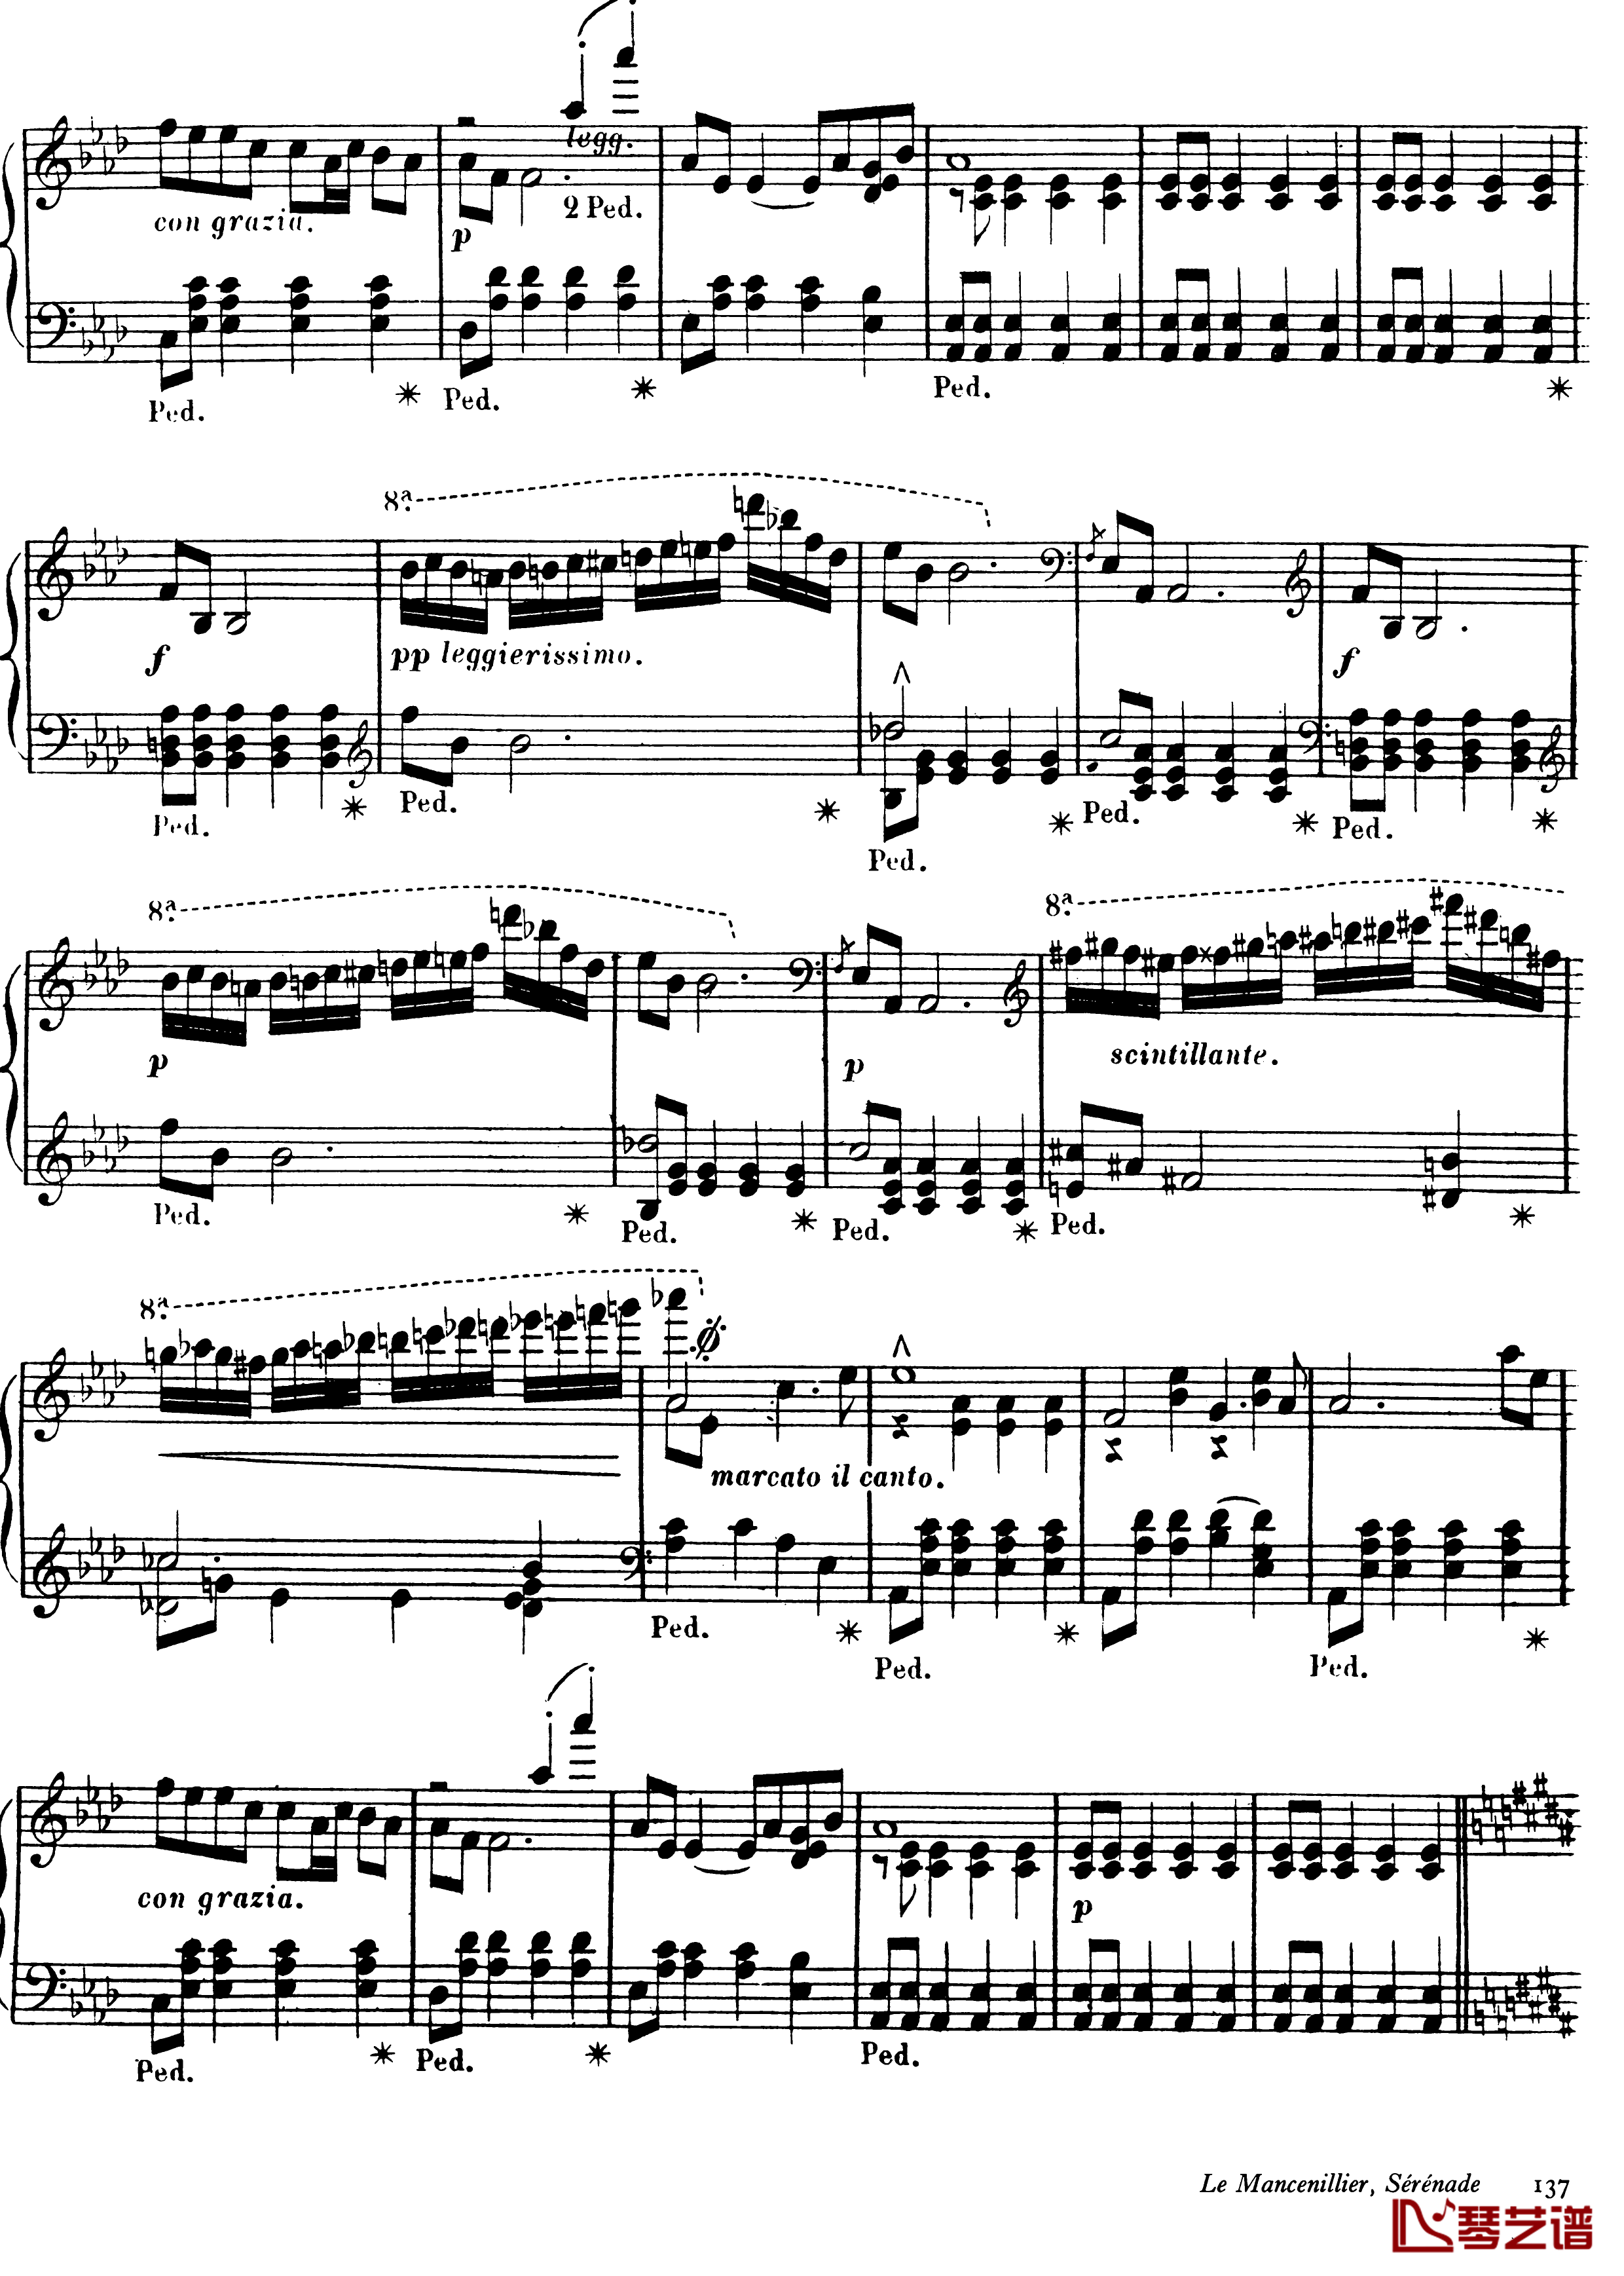 西印度小夜曲 Op.11钢琴谱-戈特沙尔克